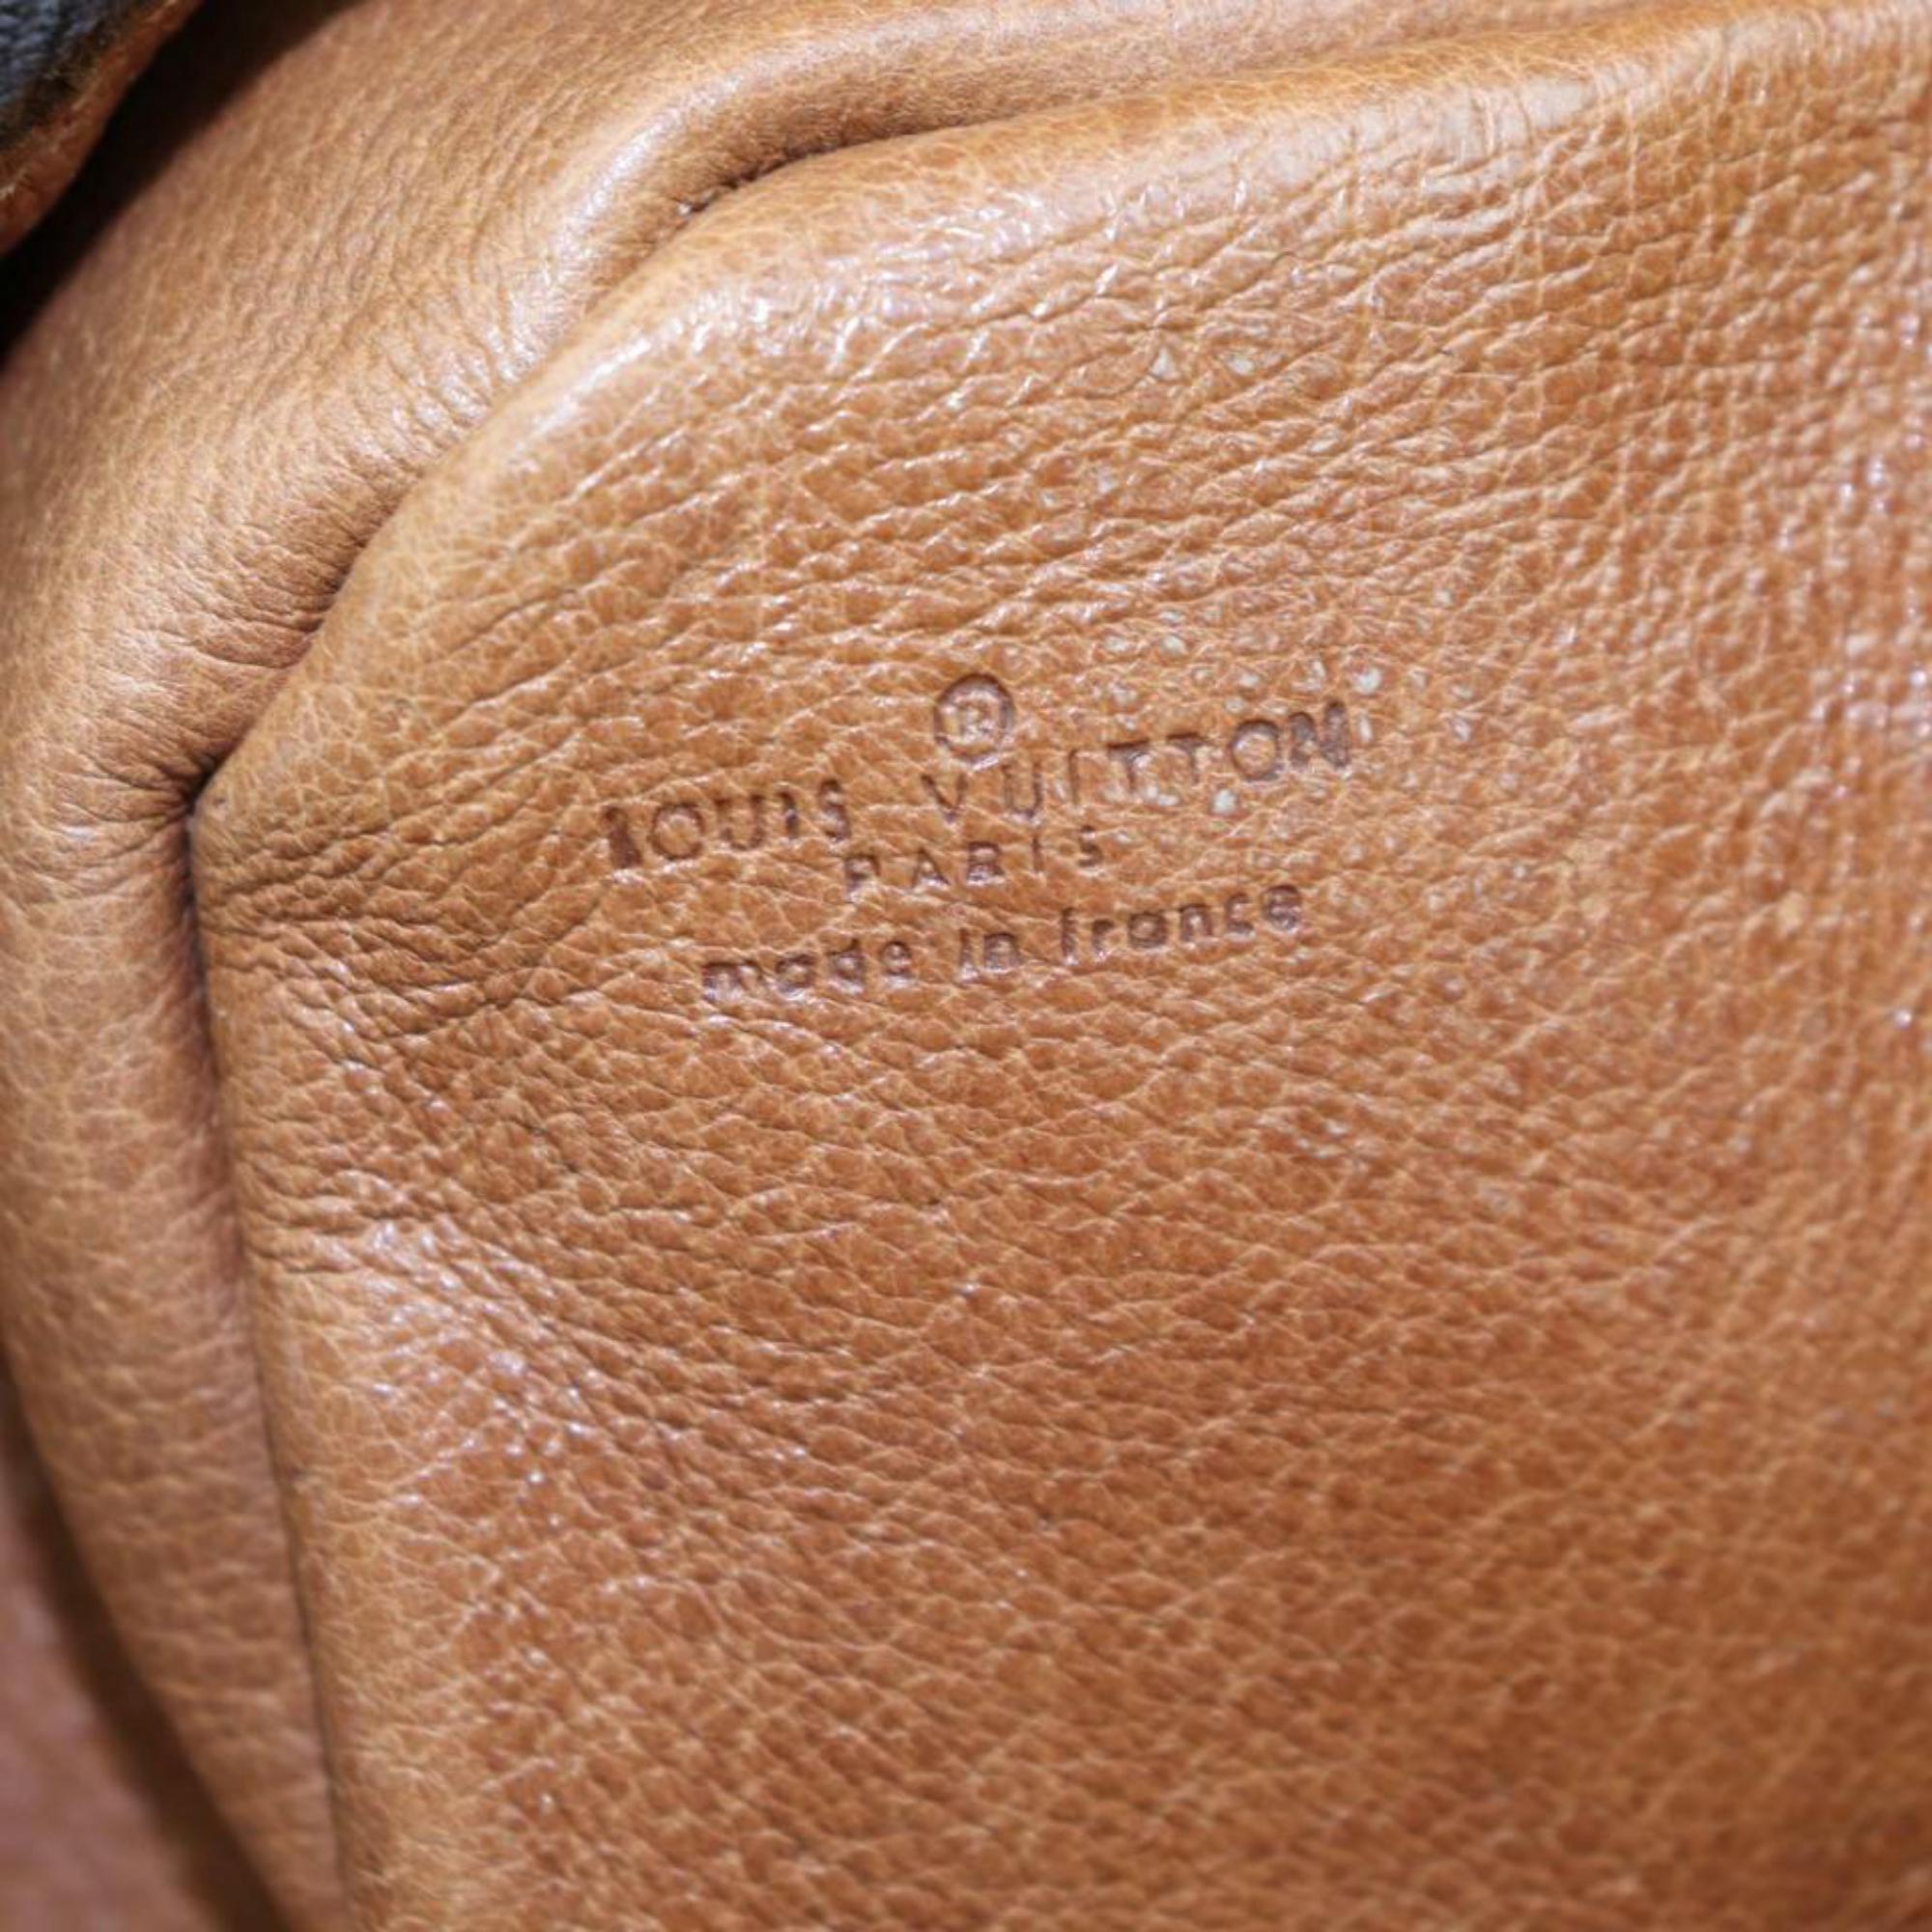 Louis Vuitton MARCEAU Shoulder Bag Purse Monogram LV E2323CA406